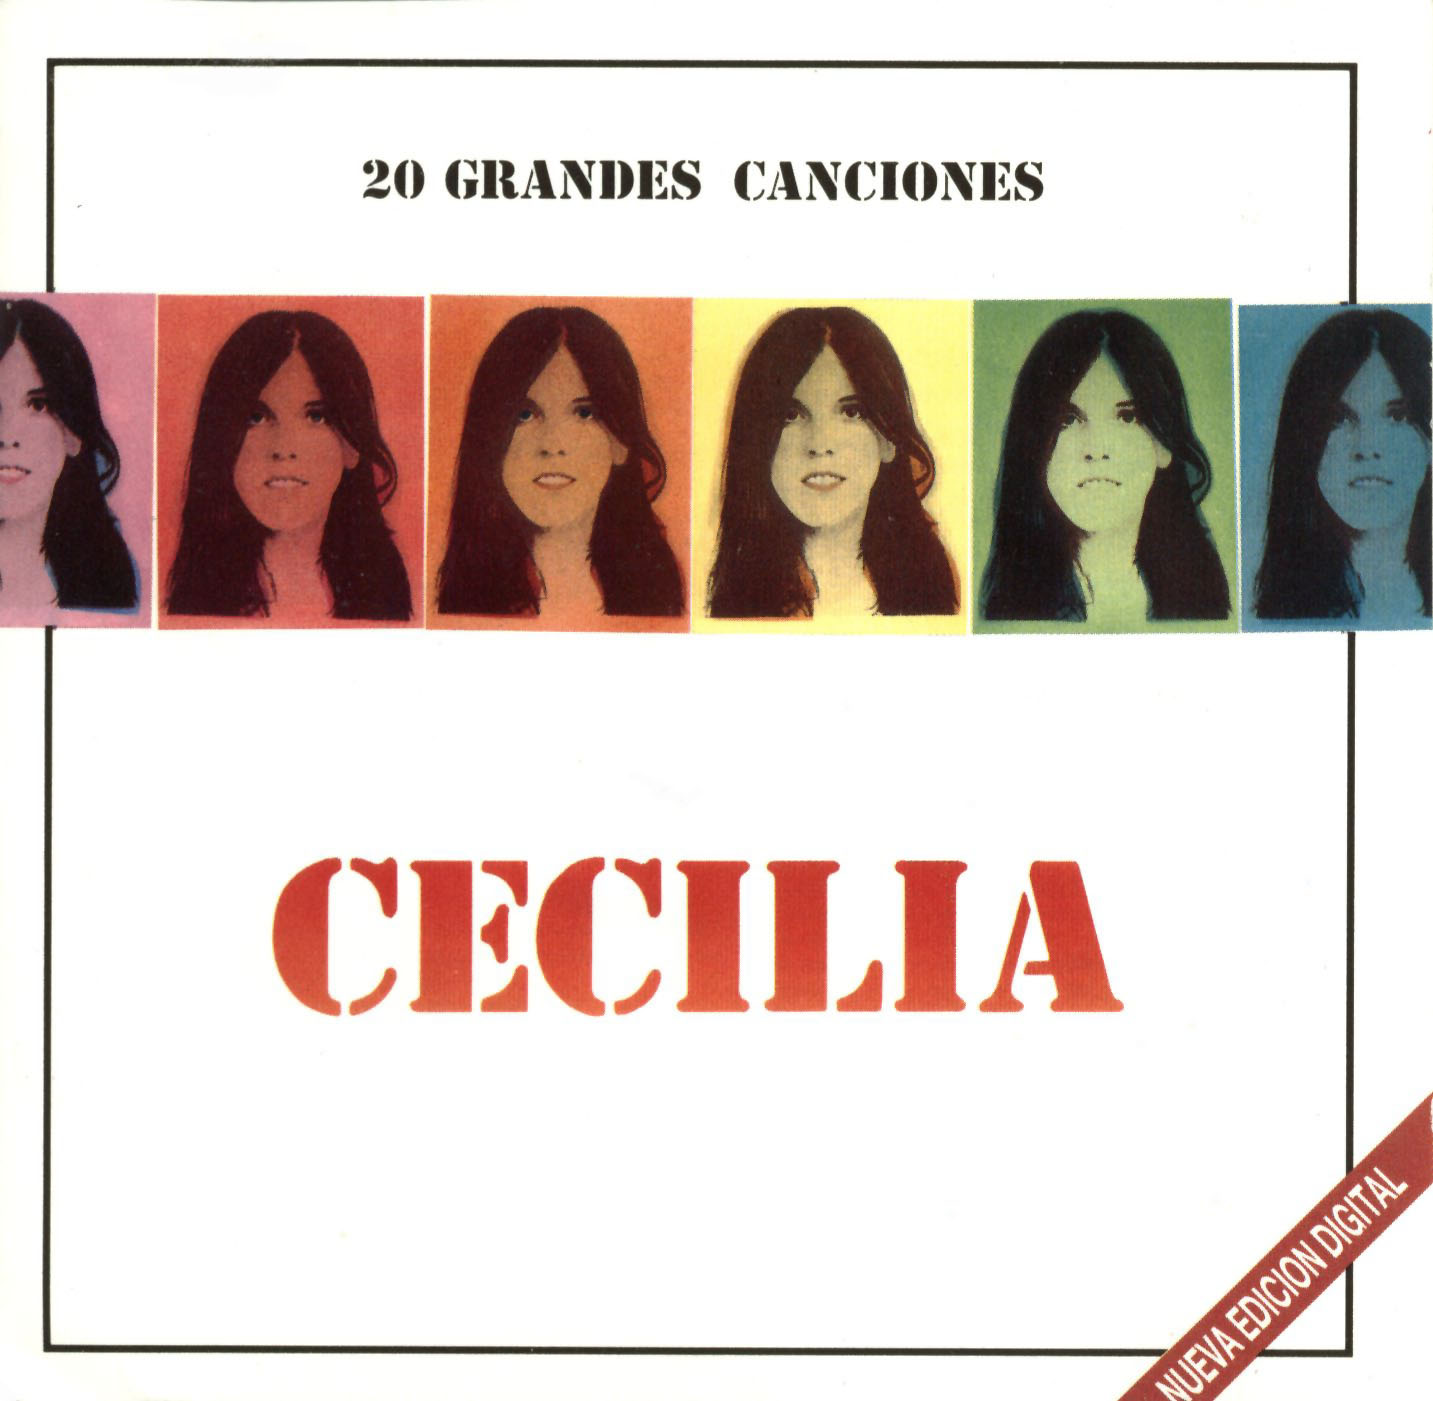 Cartula Frontal de Cecilia - 20 Grandes Canciones